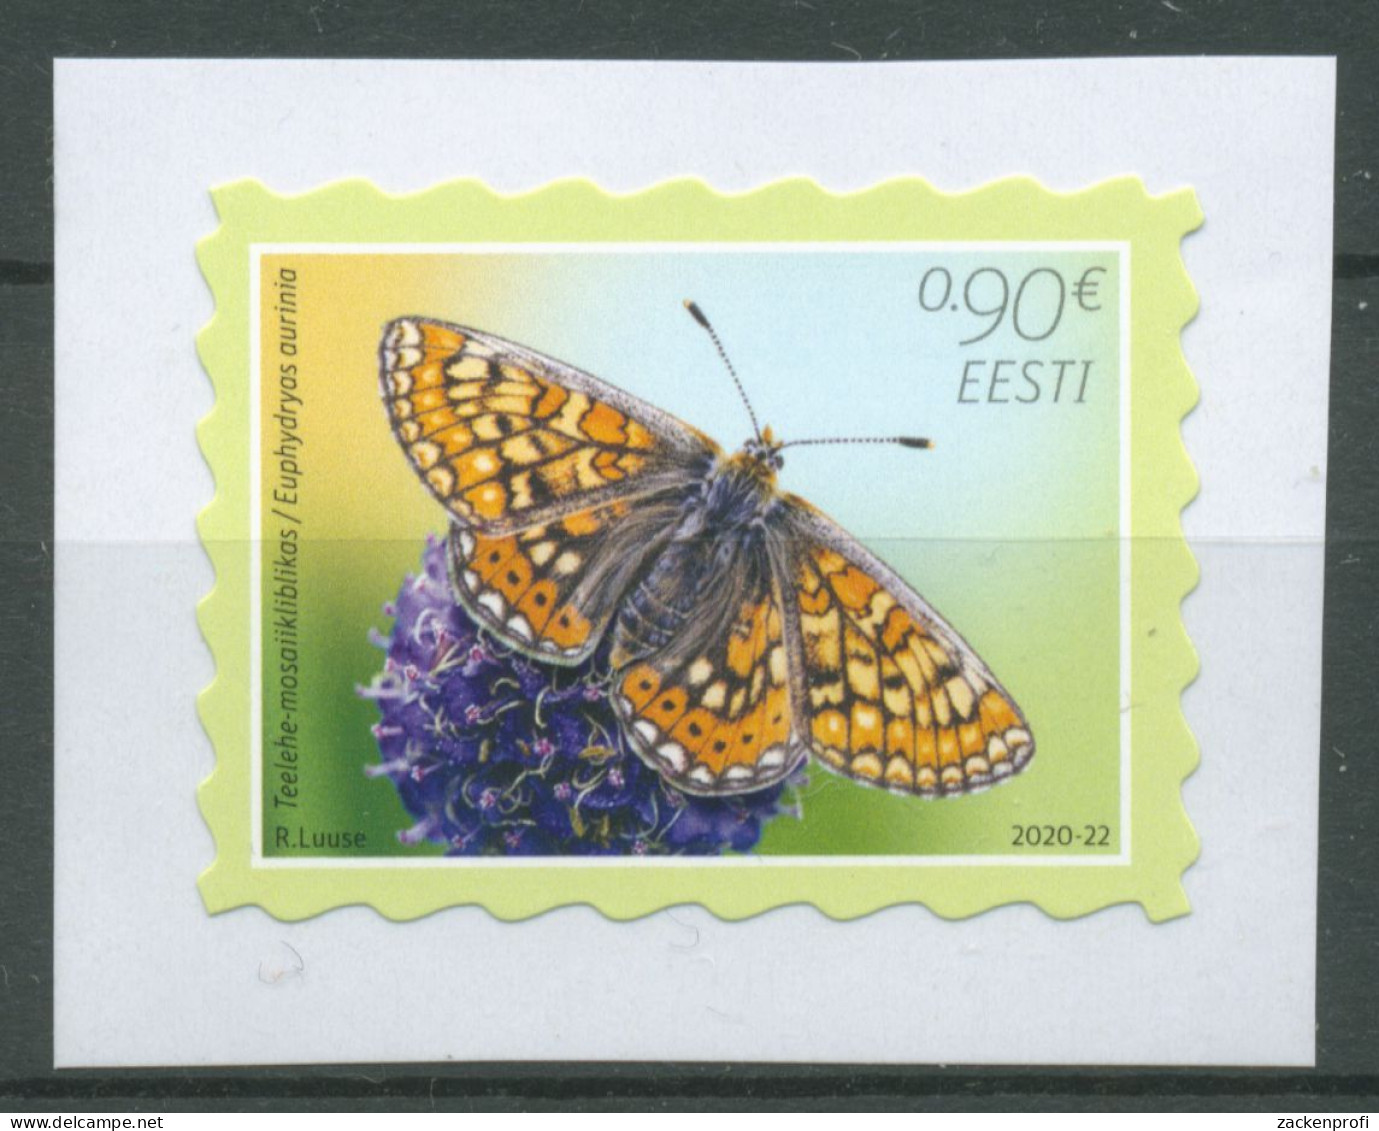 Estland 2020 Tiere Schmetterling Des Jahres Scheckenfalter 992 Postfrisch - Estonia